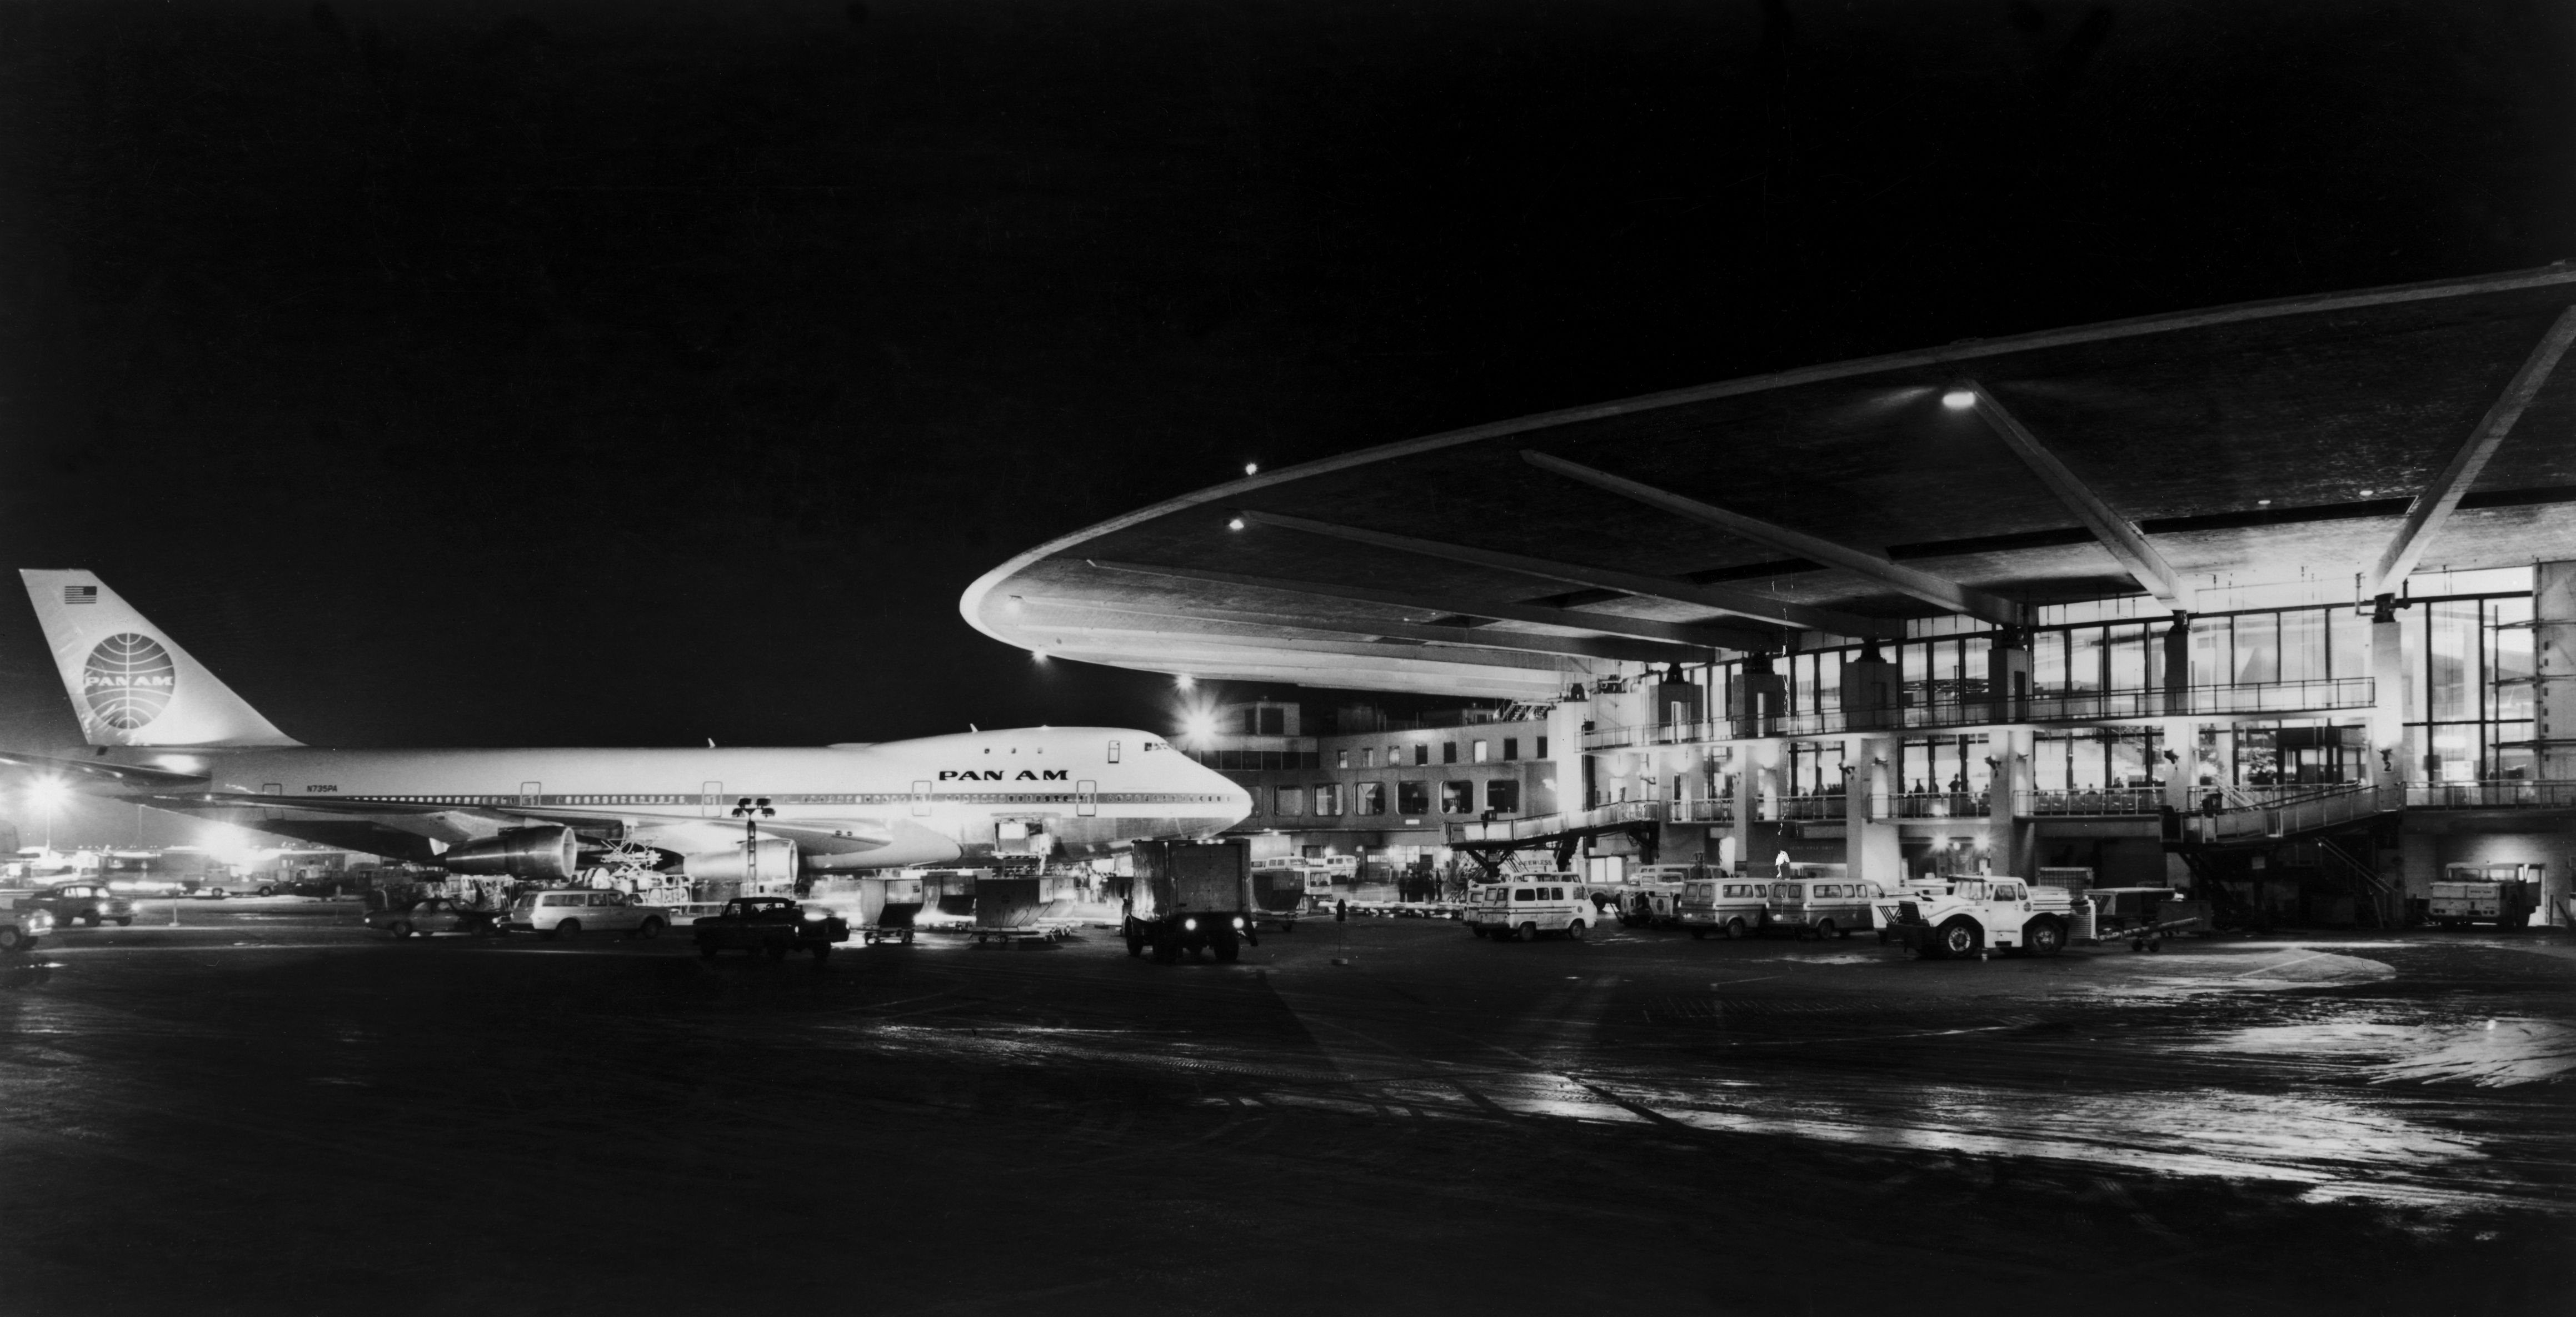 Pan Am Boeing 747 at JFK Airport